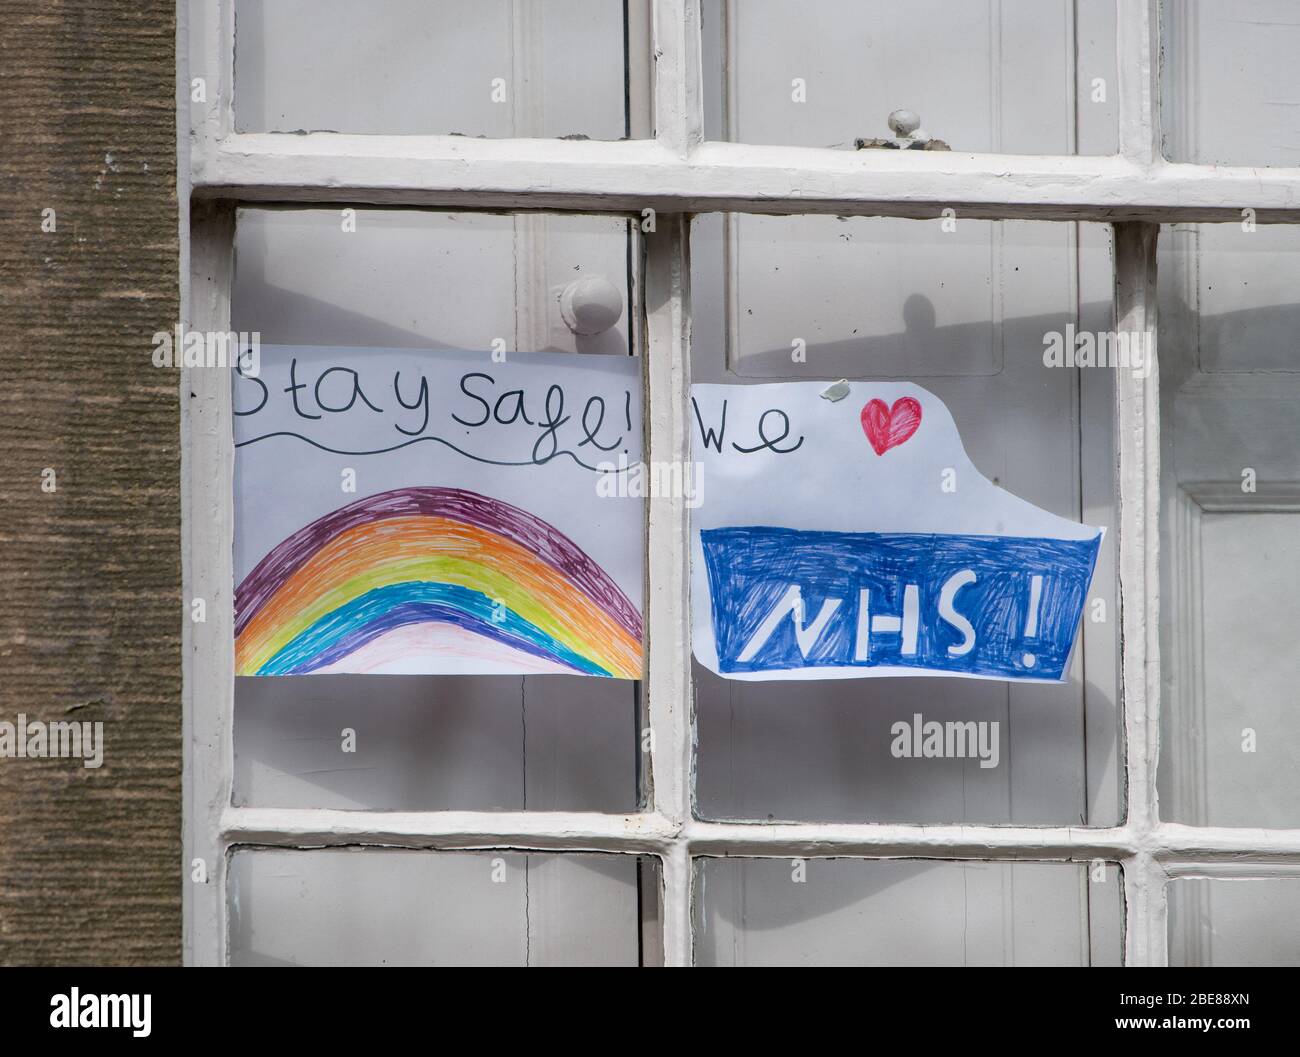 Ein Kind zeichnet einen Regenbogen, bleiben Sie sicher und NHS-Zeichen auf einem Fenster zur Unterstützung der National Health Service, Chipping, Preston, Lancashire, Großbritannien Stockfoto